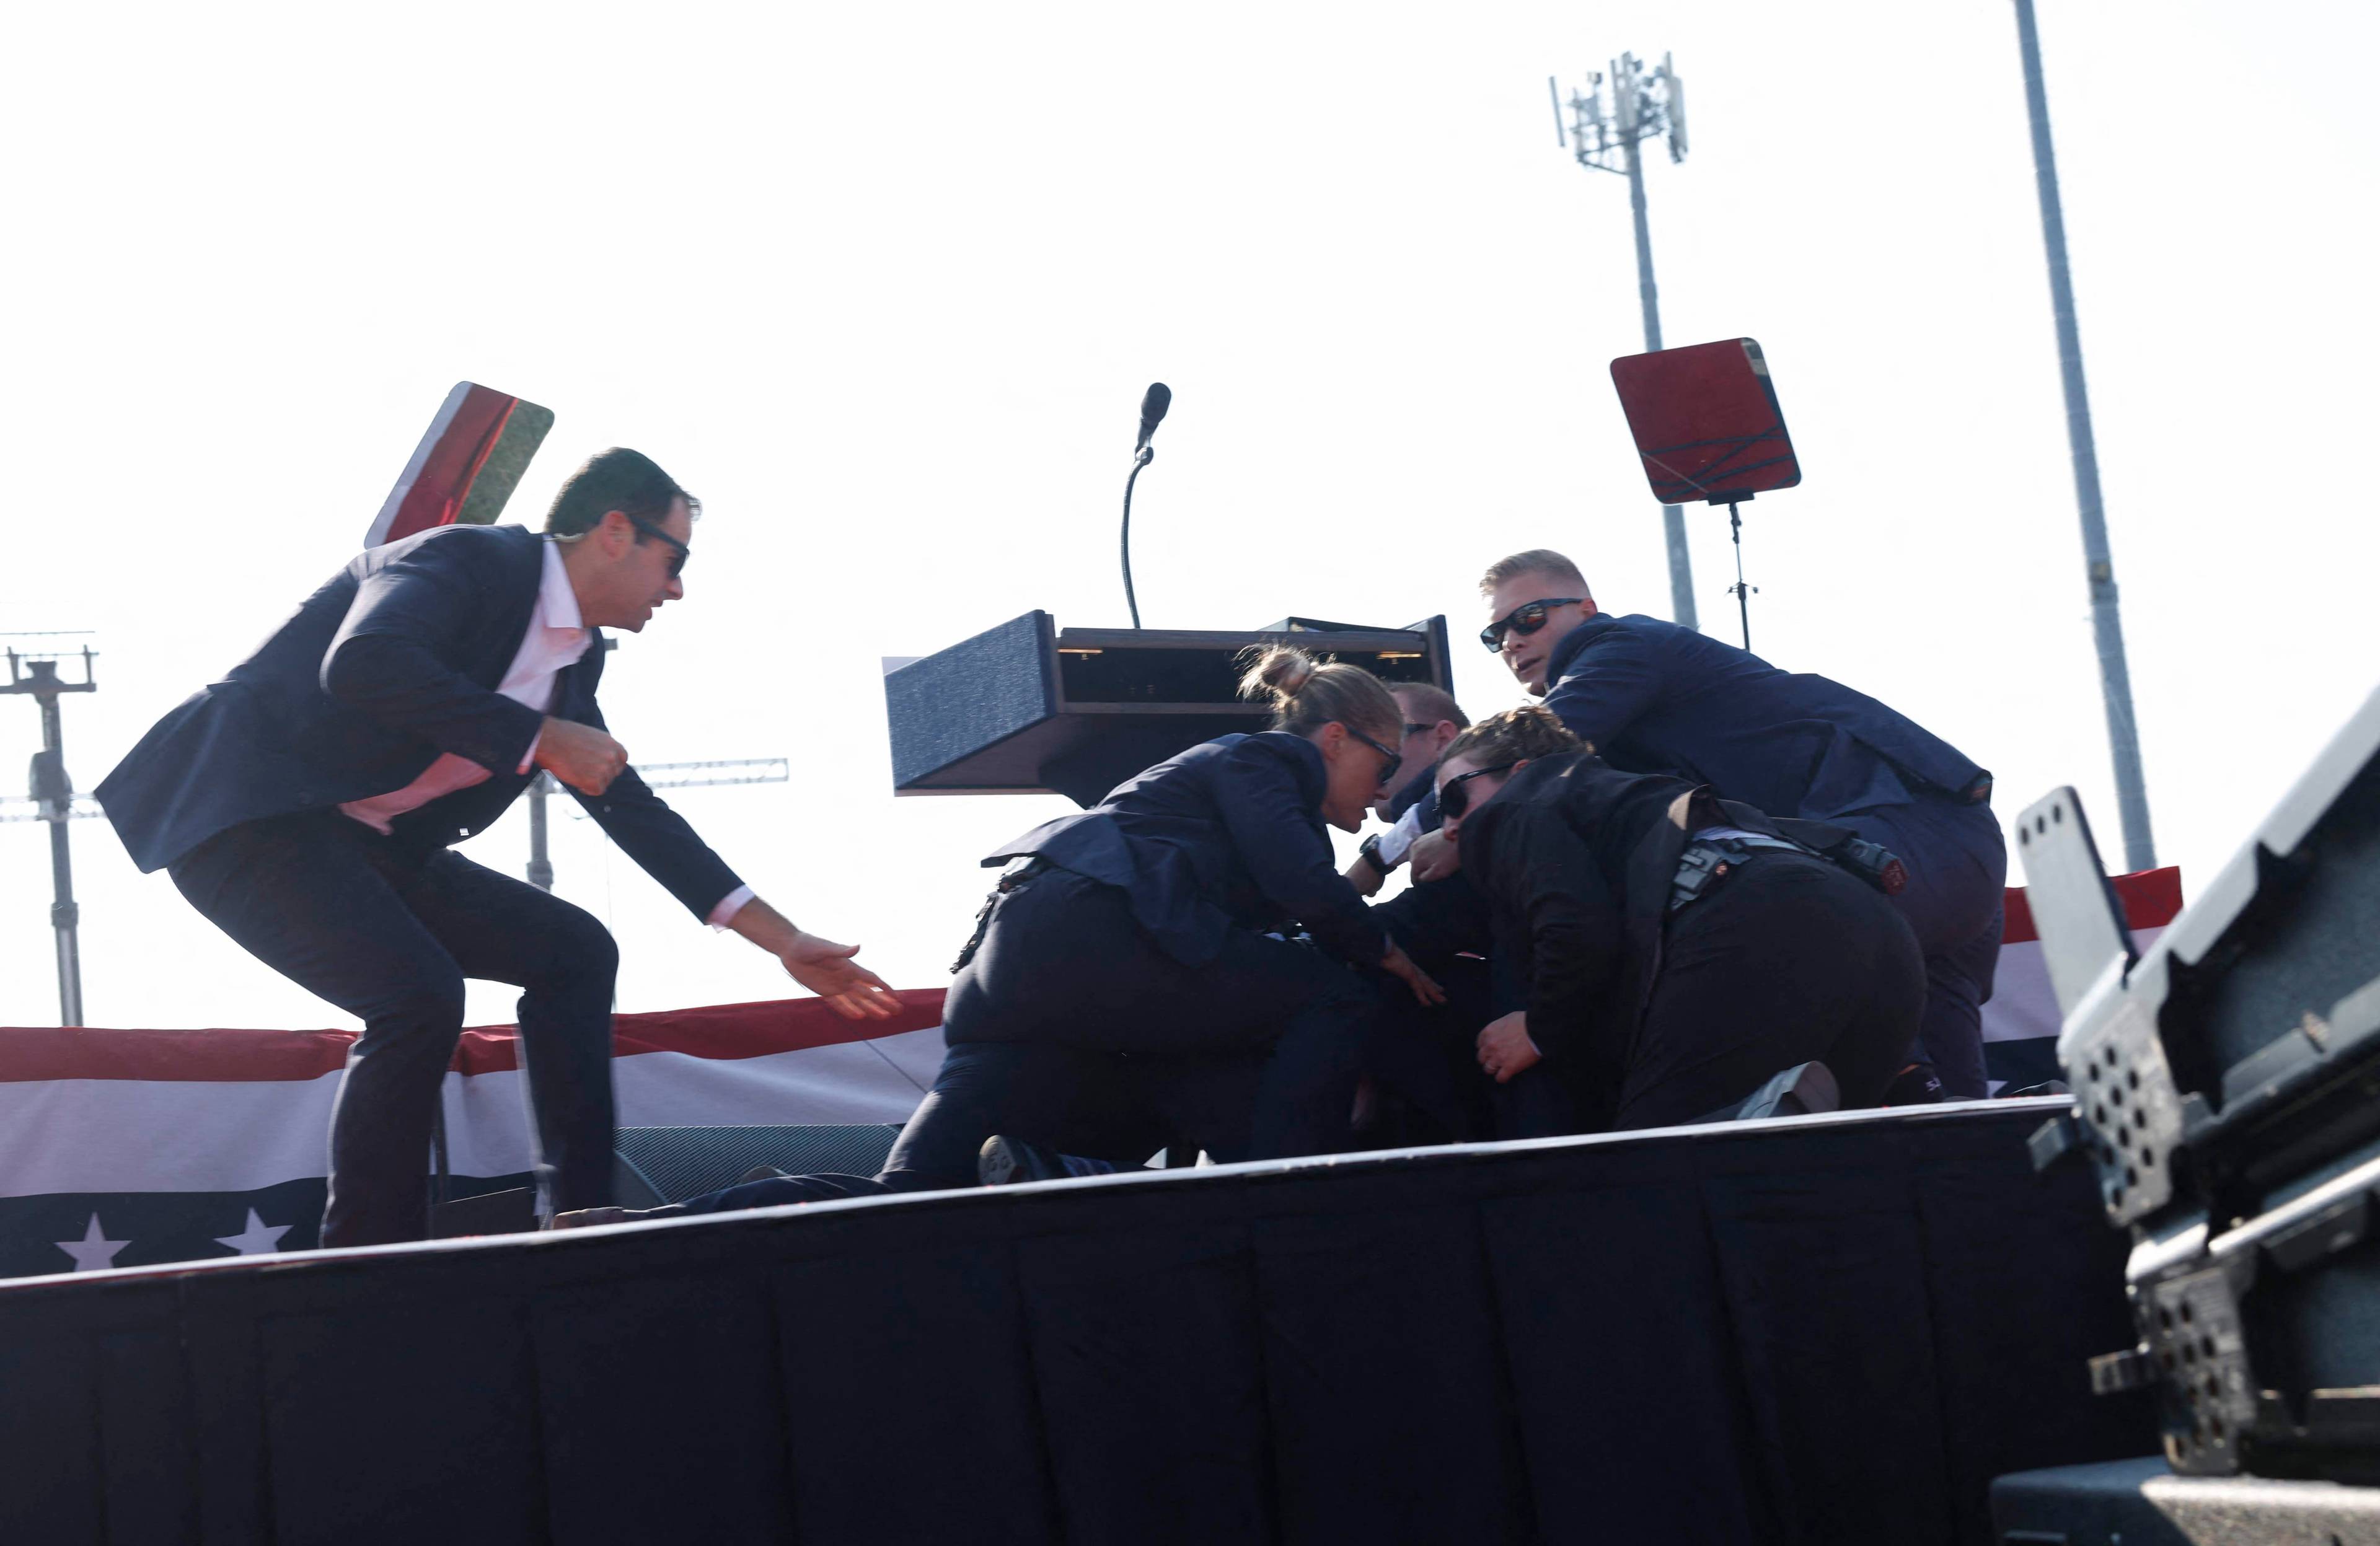 Agenci ochrony przykrywają swoimi ciałami Donalda Trumpa, leżącego na scenie. Zamach na Trumpa